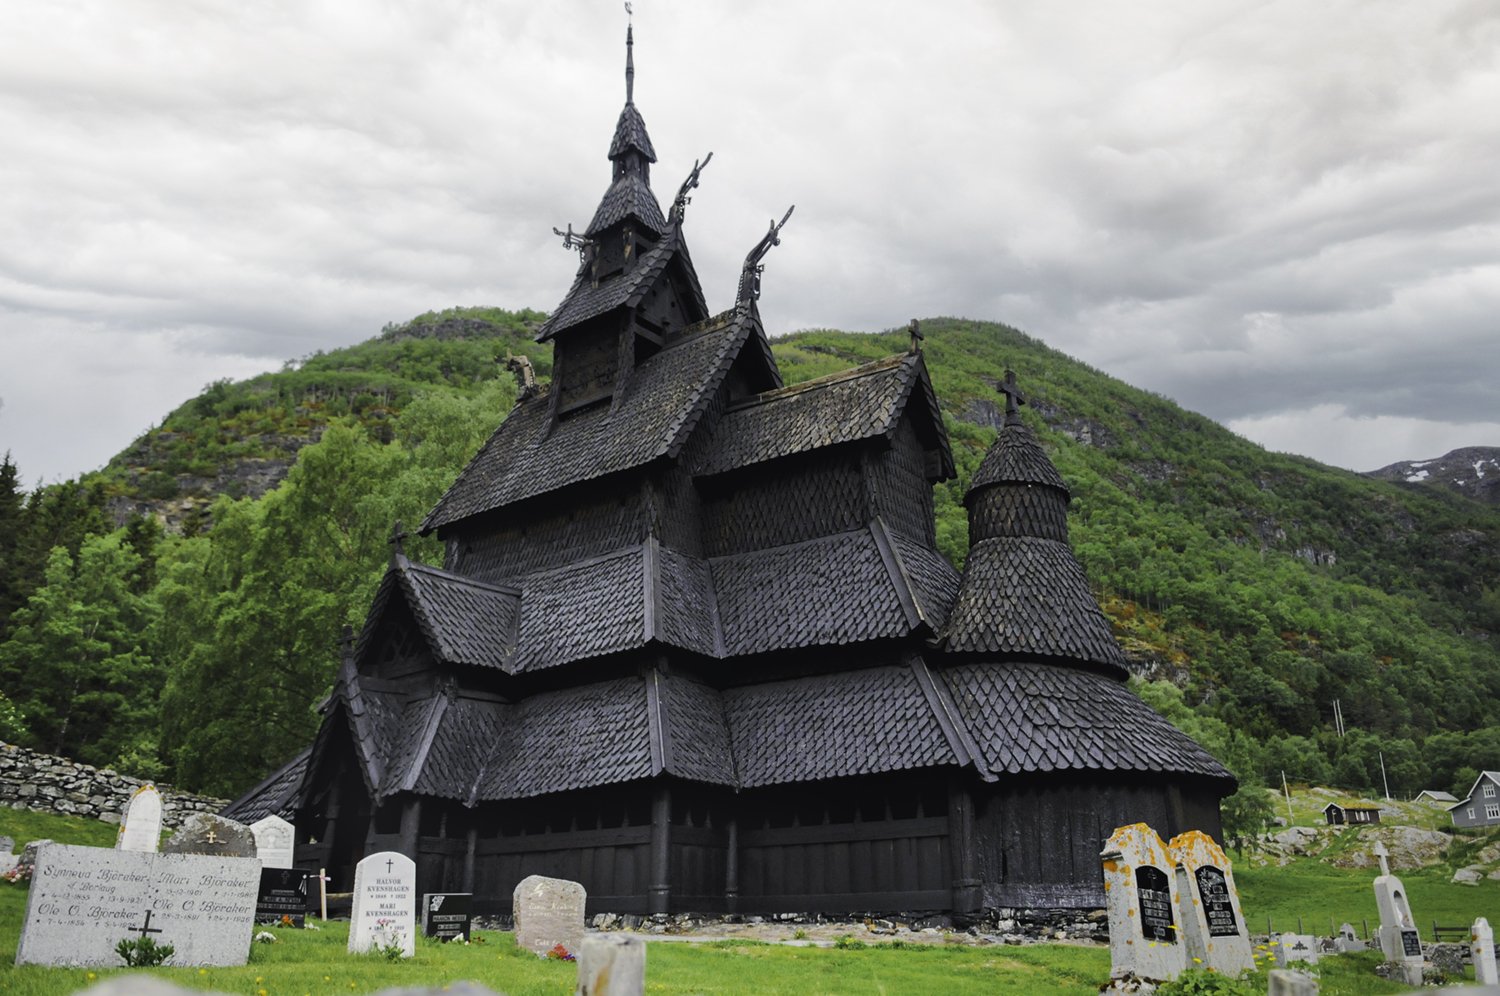 Borgund Stave Church, Borgund, Norway